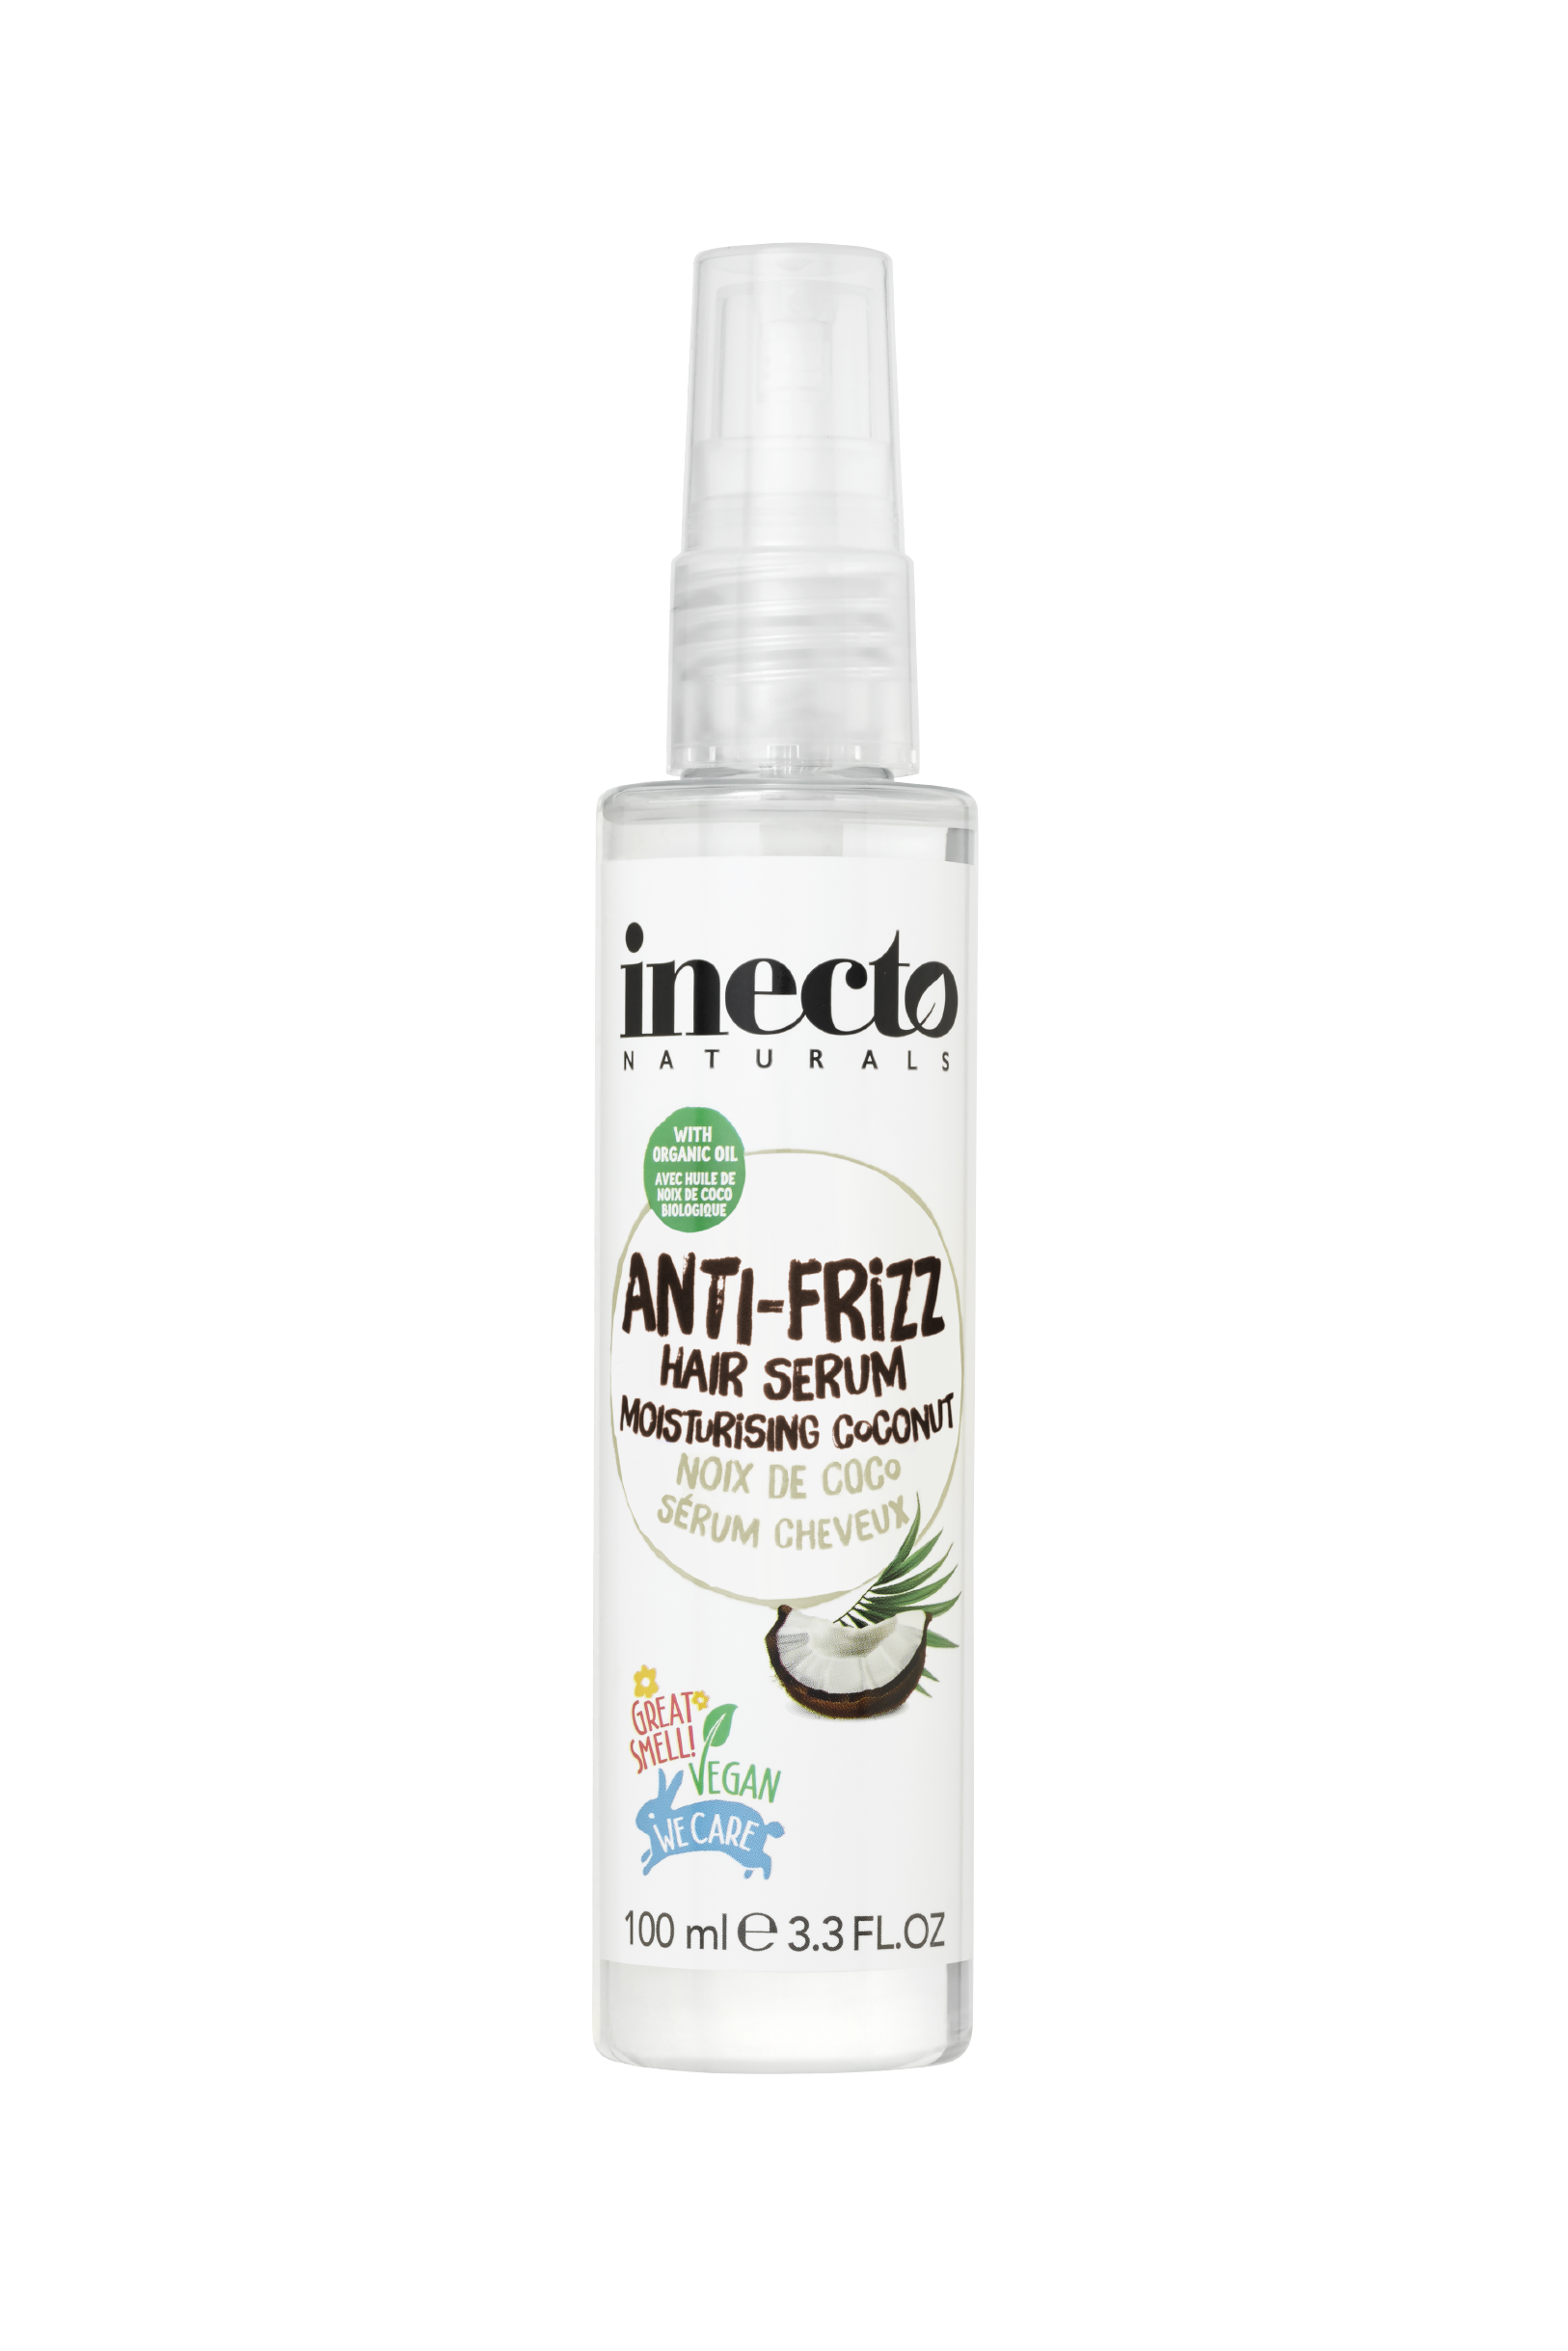 Moisturising Coconut Anti-frizz Hair Serum - Inecto UK